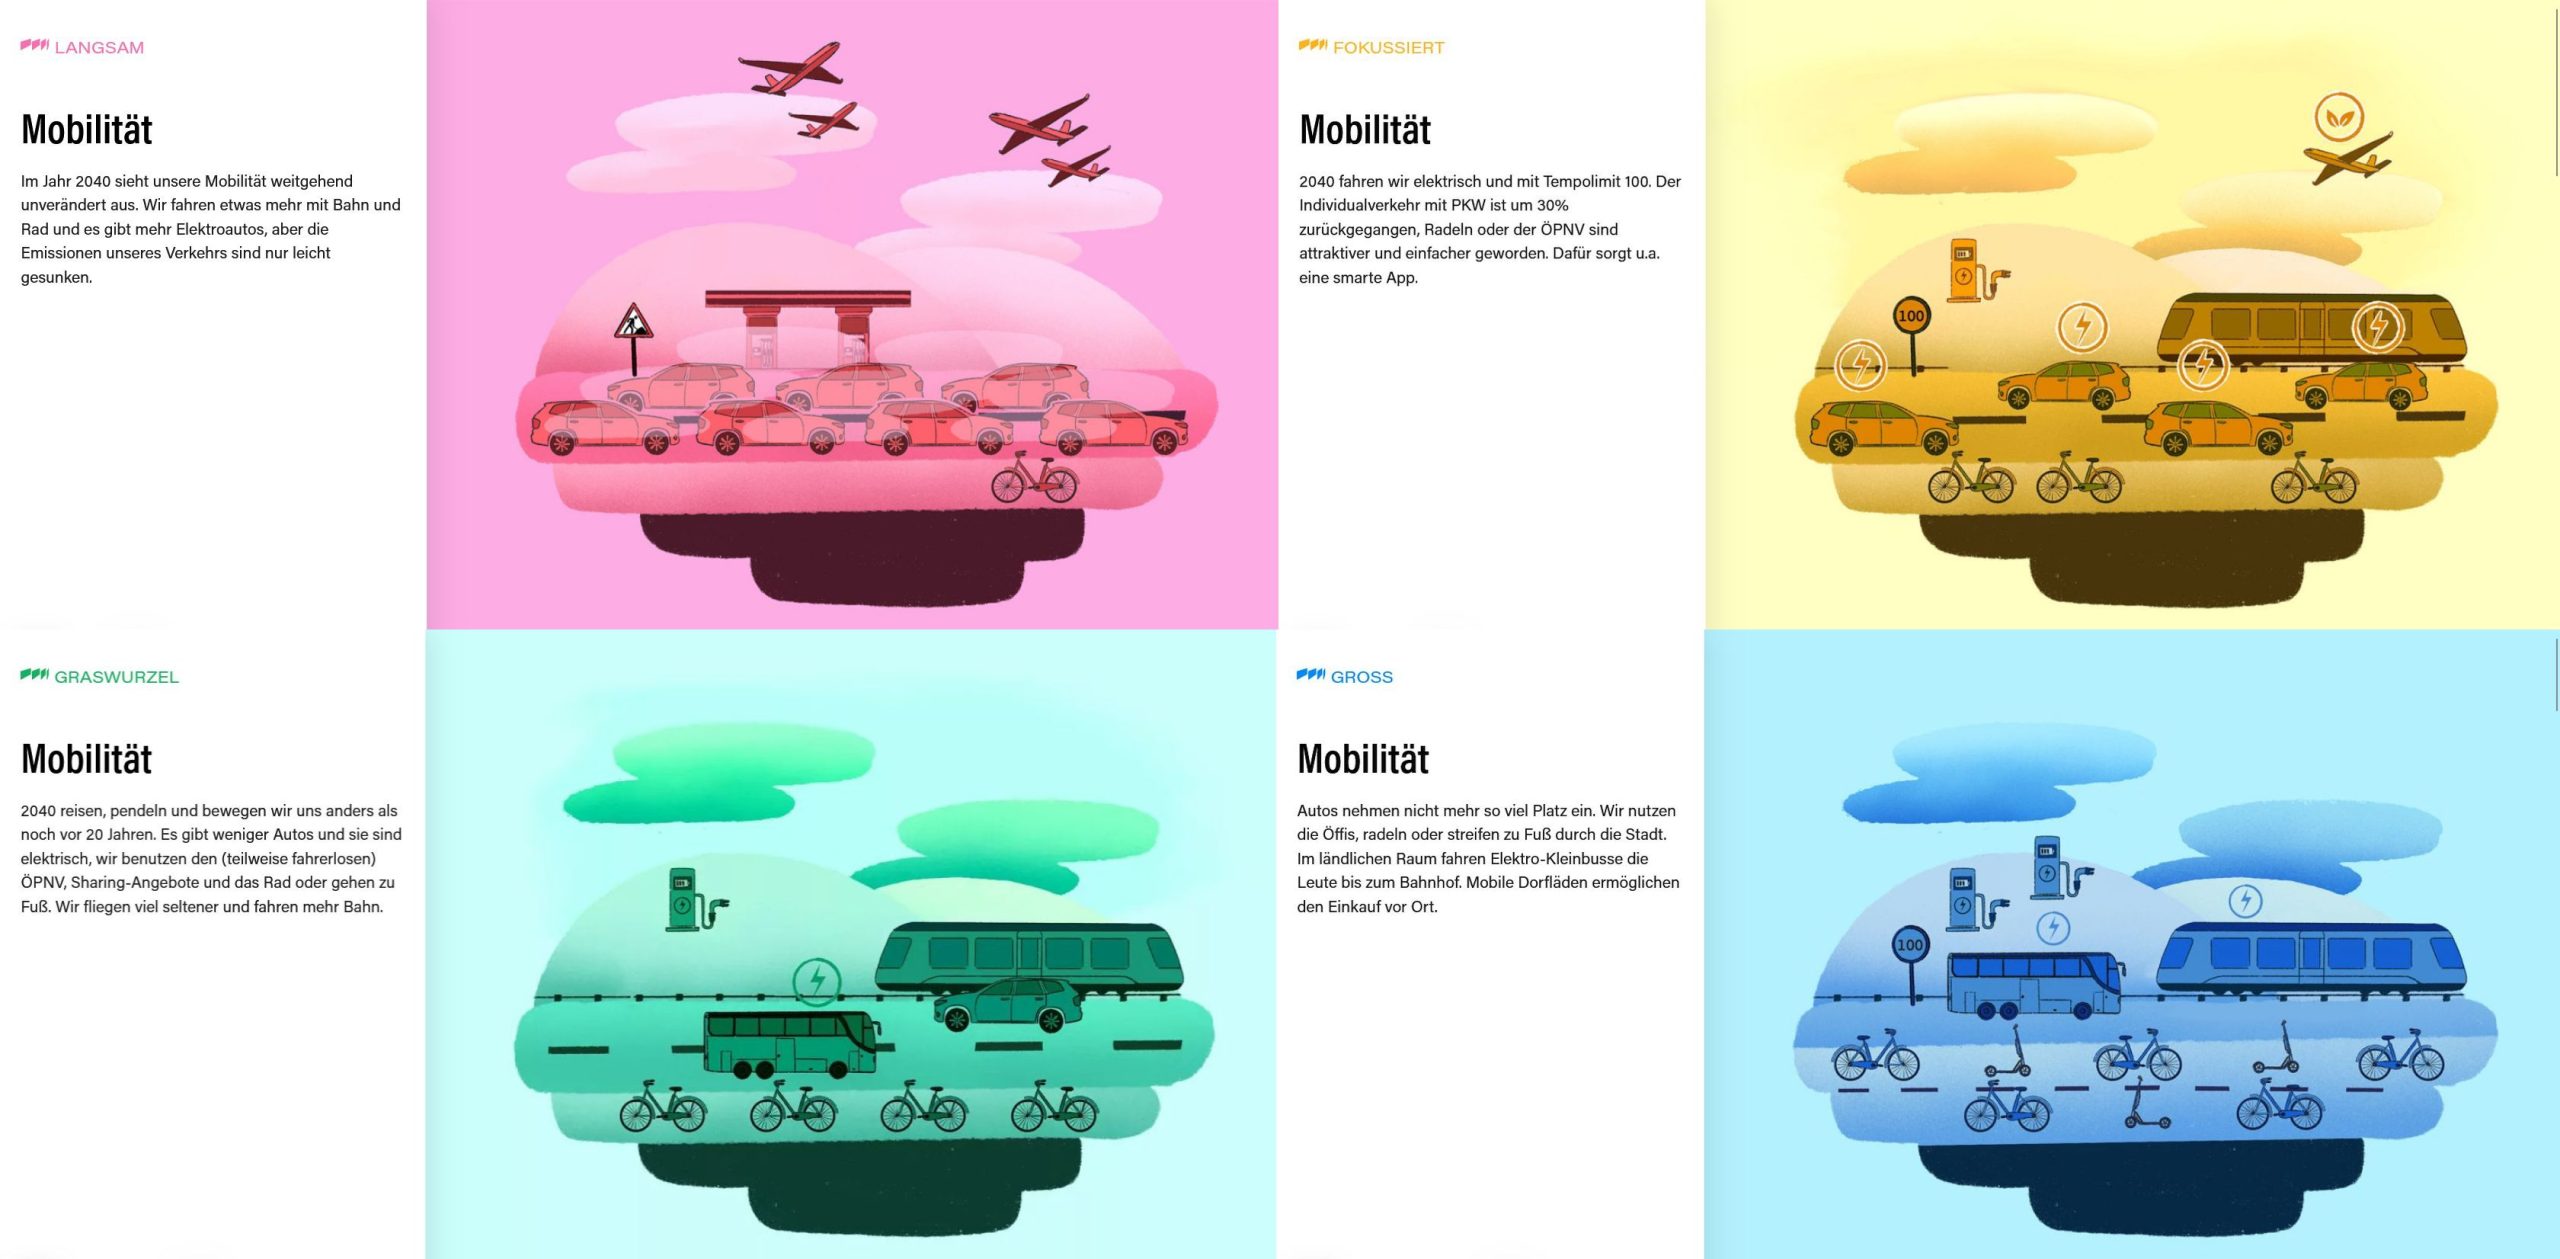 Collage aus vier kurzen Texten und zugehörigen farbigen Illustrationen von der genannten Website